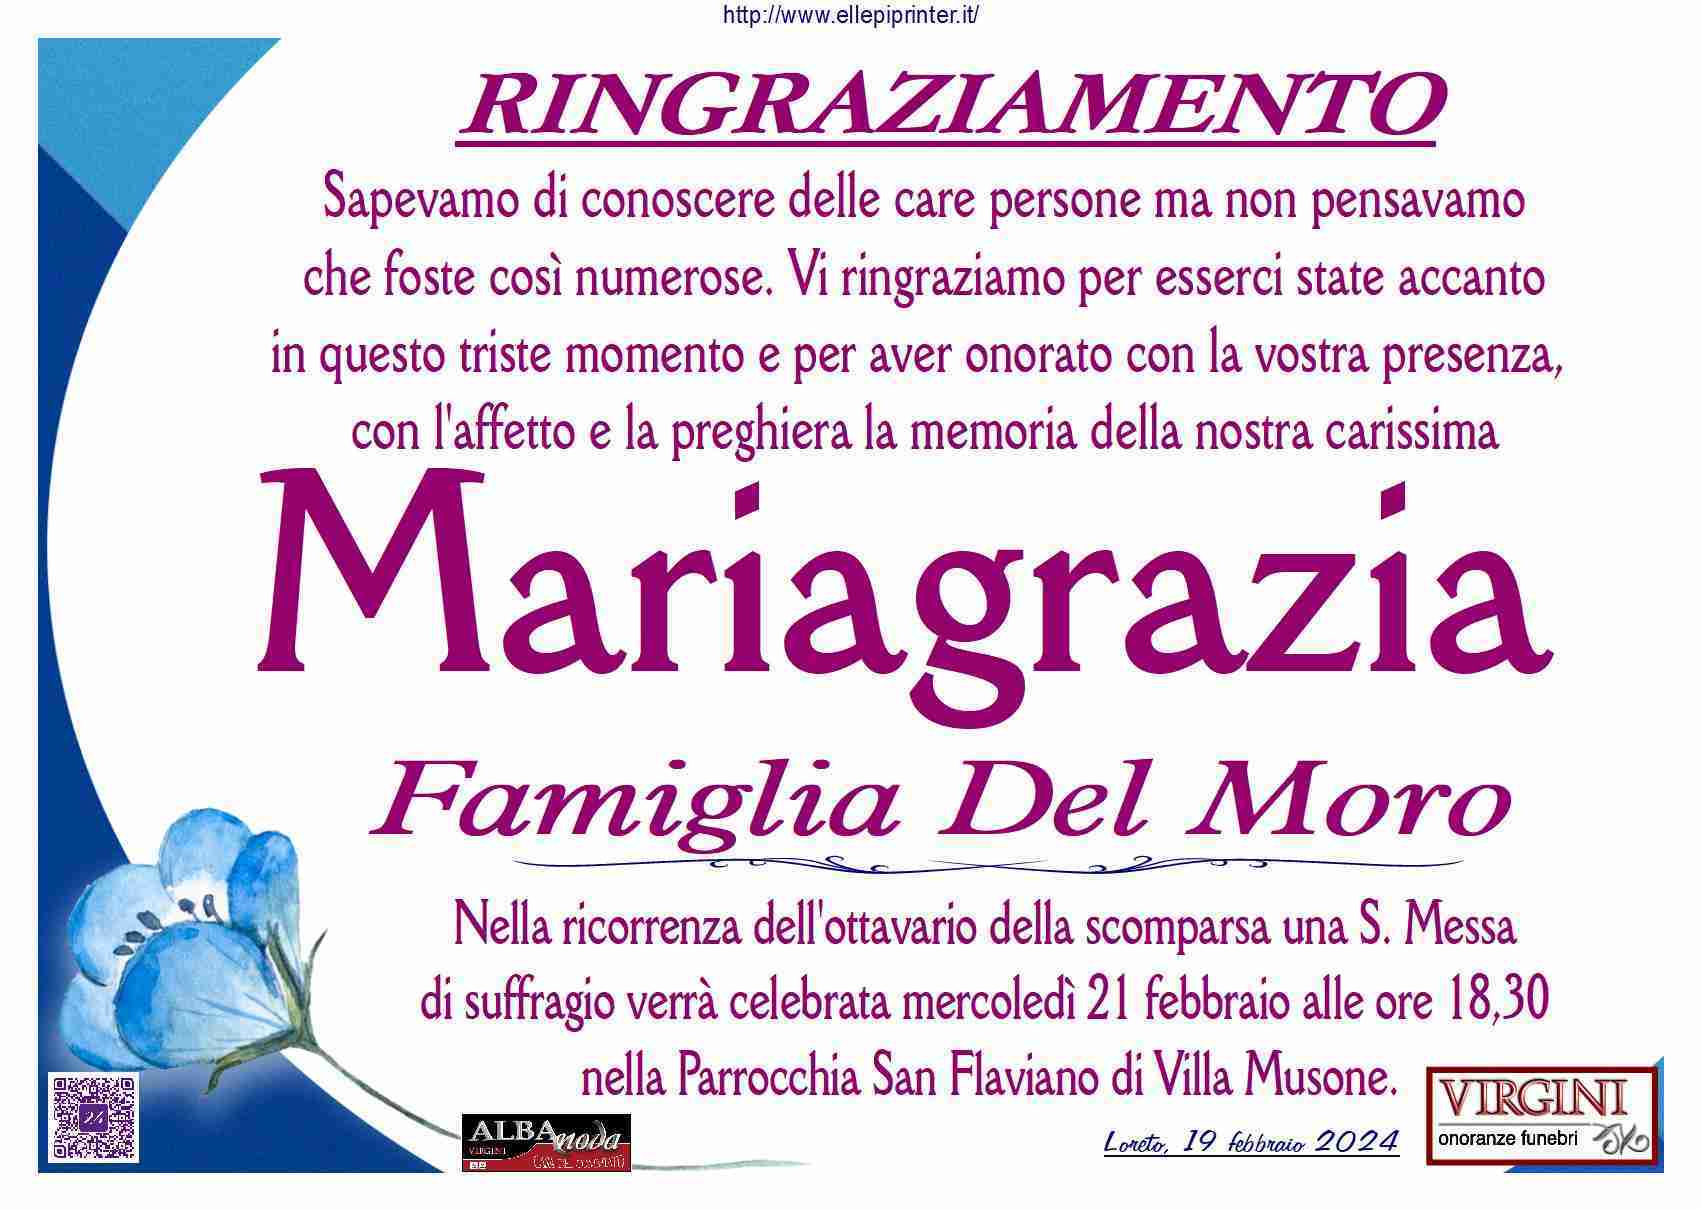 Mariagrazia Lancioni